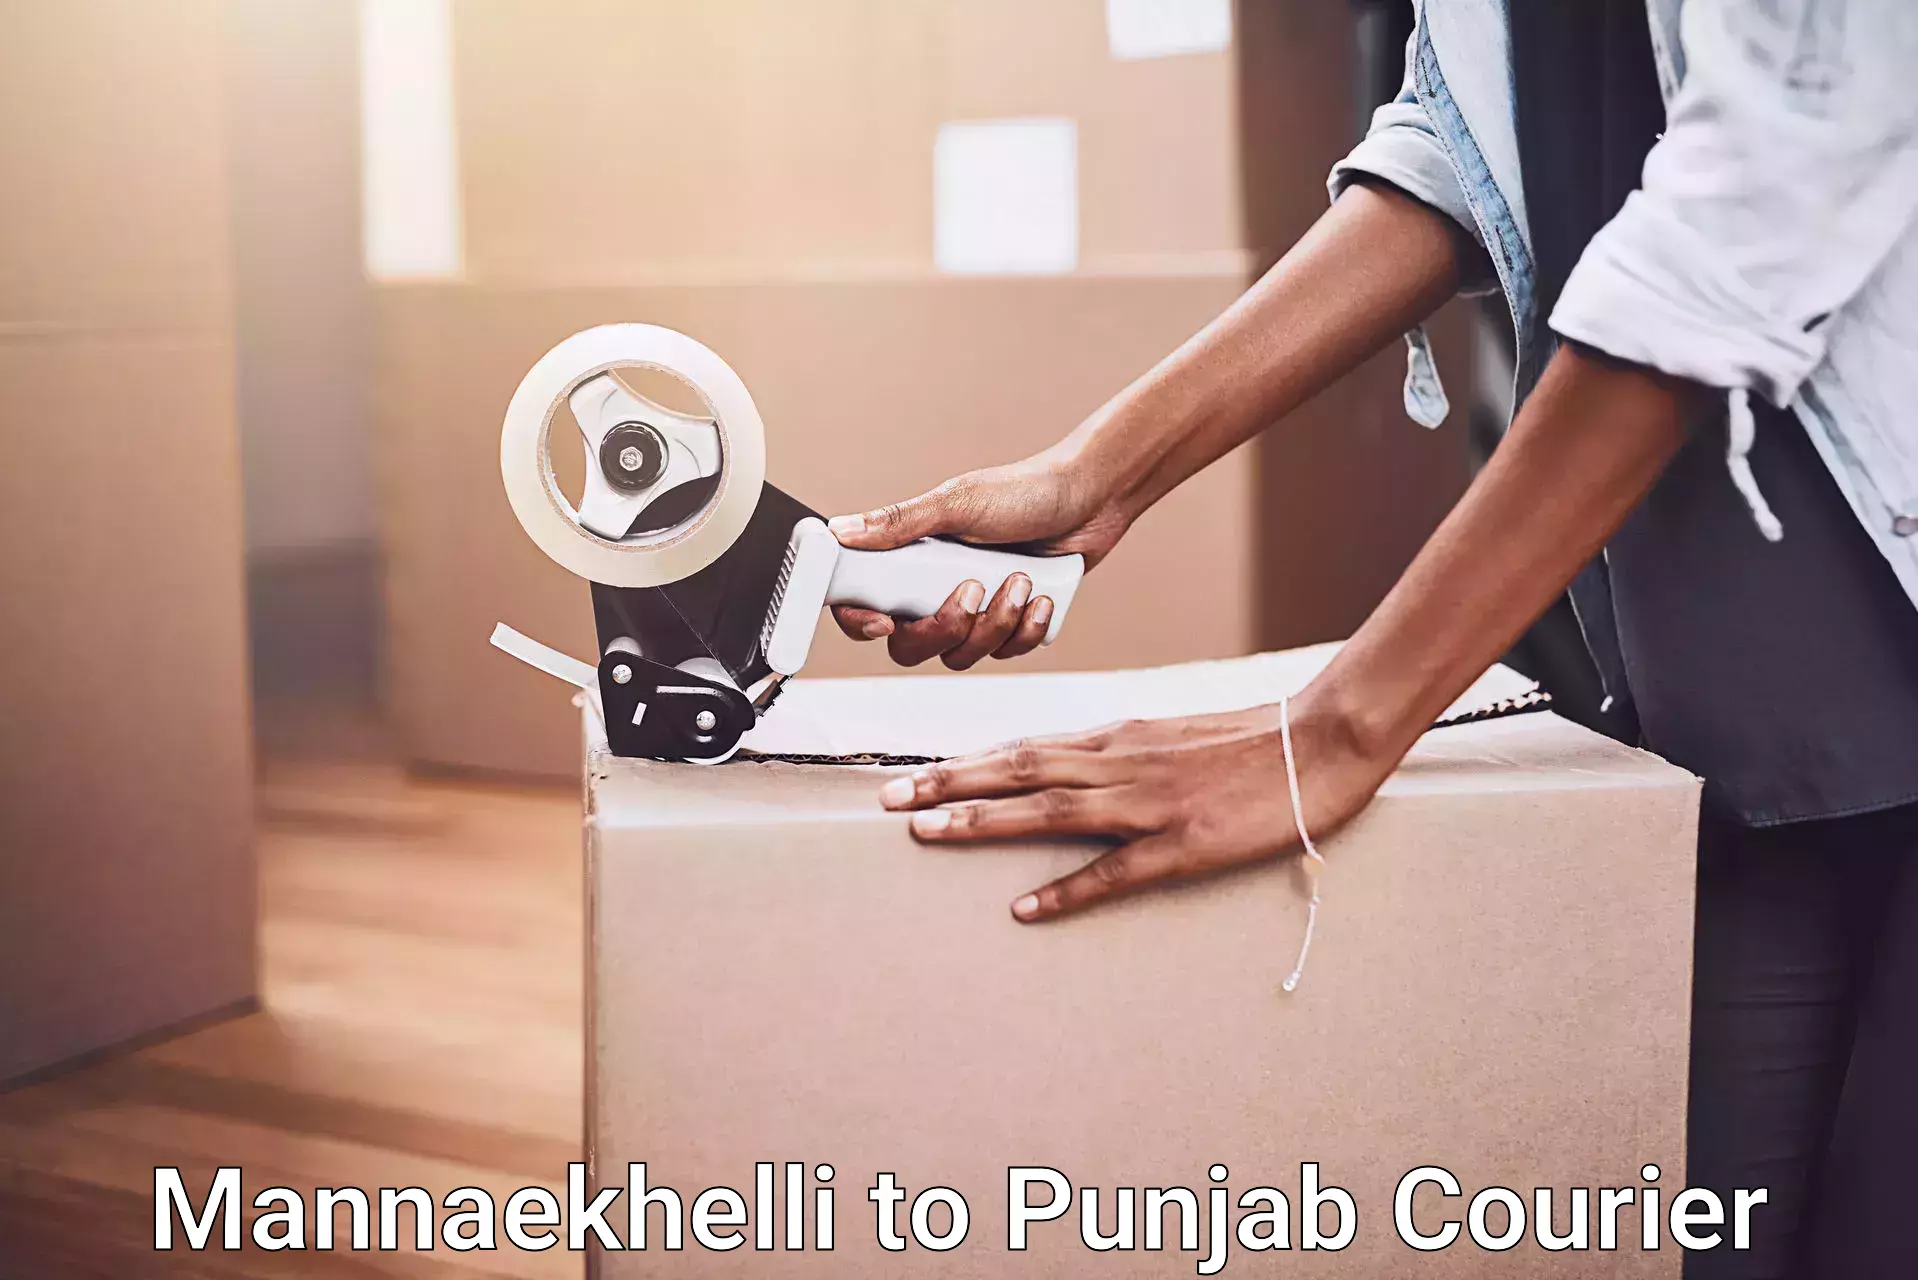 Customized moving experience Mannaekhelli to Punjab